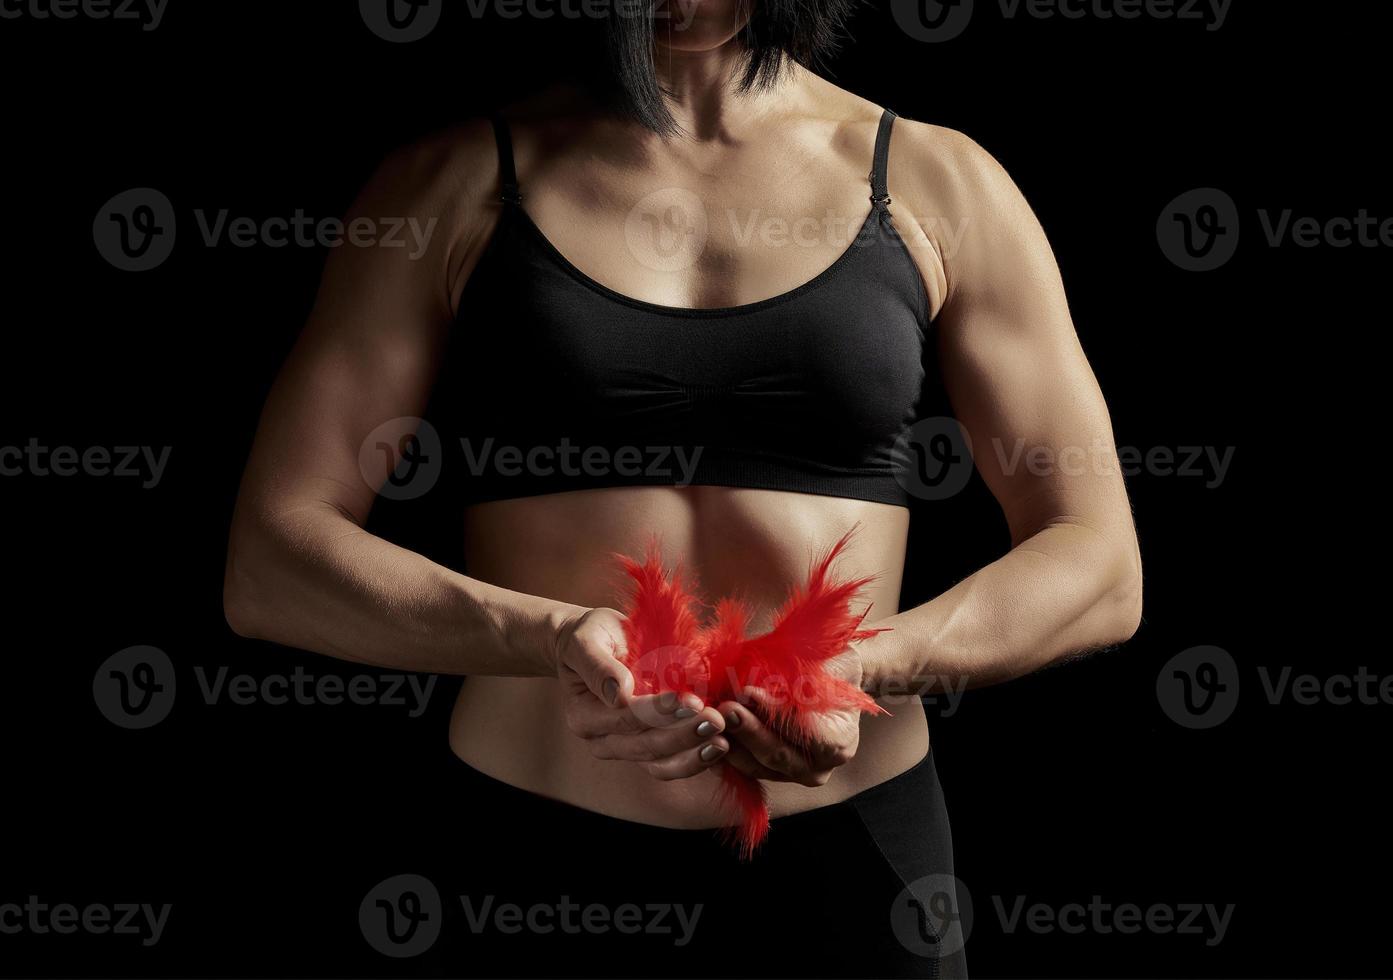 jovem com um corpo musculoso e atlético está vestida com um top preto e leggings foto